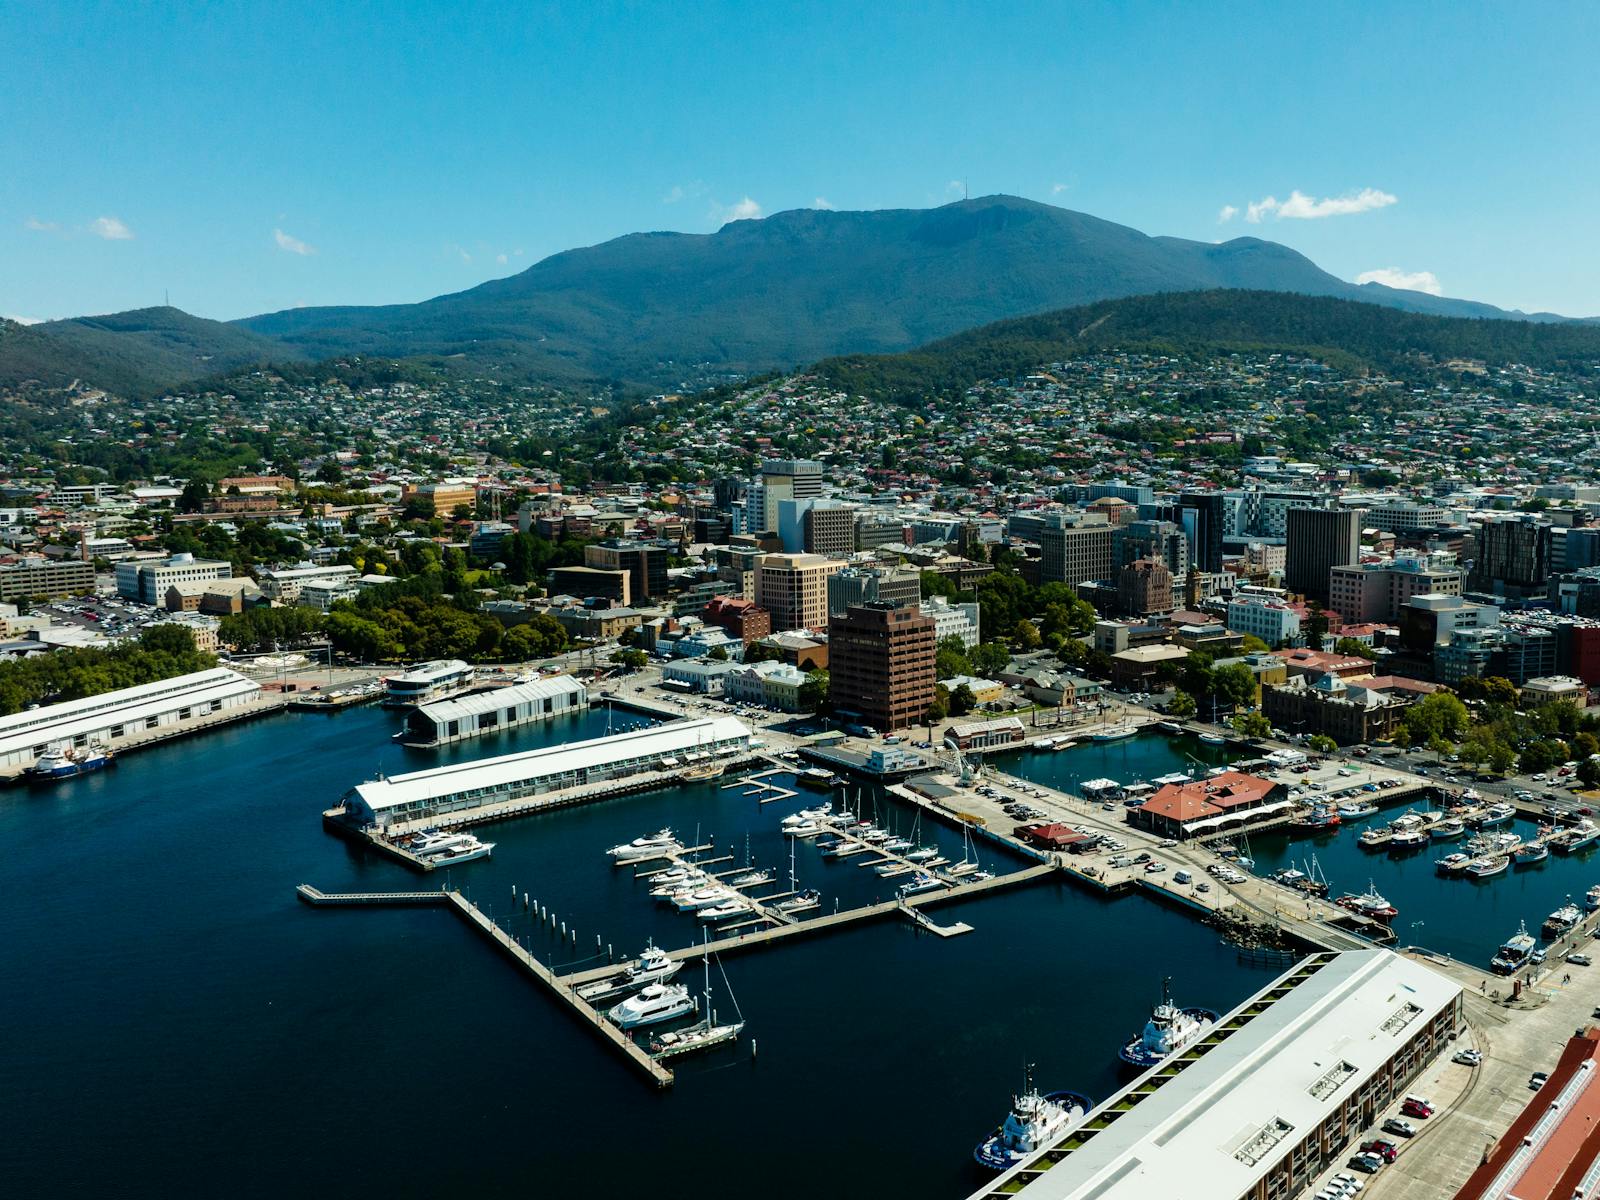 Hobart ports